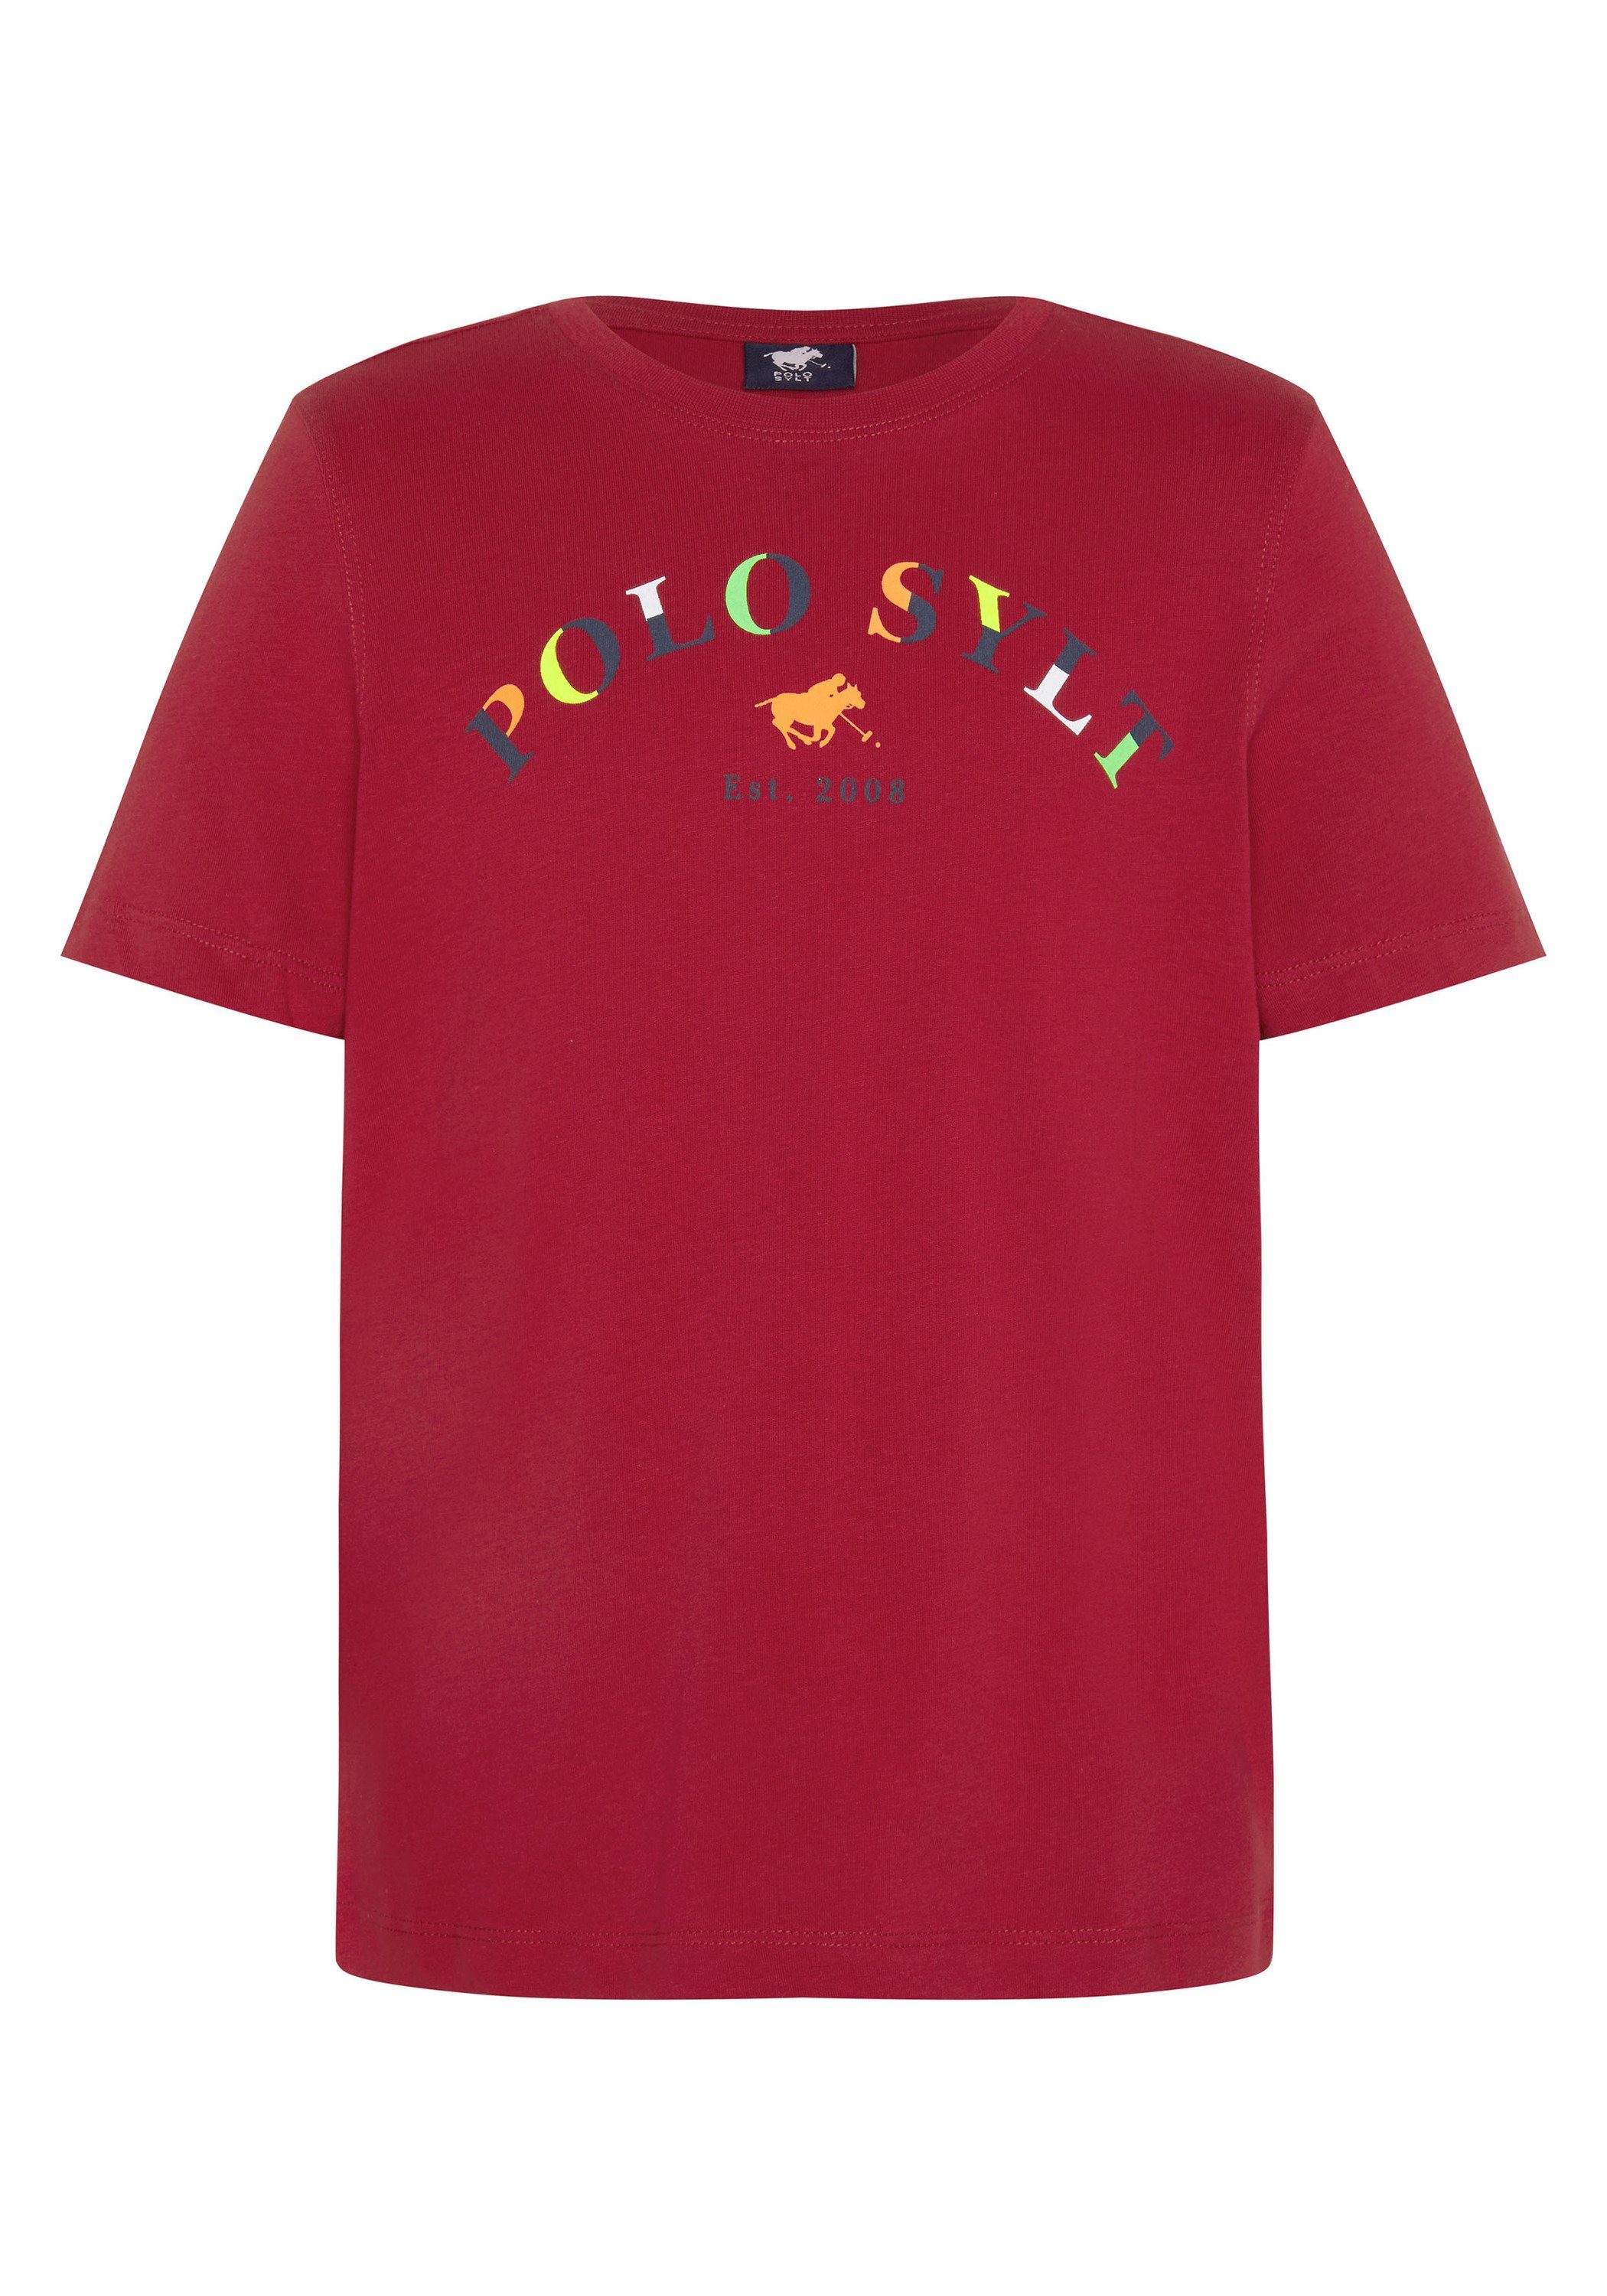 Polo Sylt Print-Shirt mit farbenfrohem Logoprint 19-1557 Chili Pepper